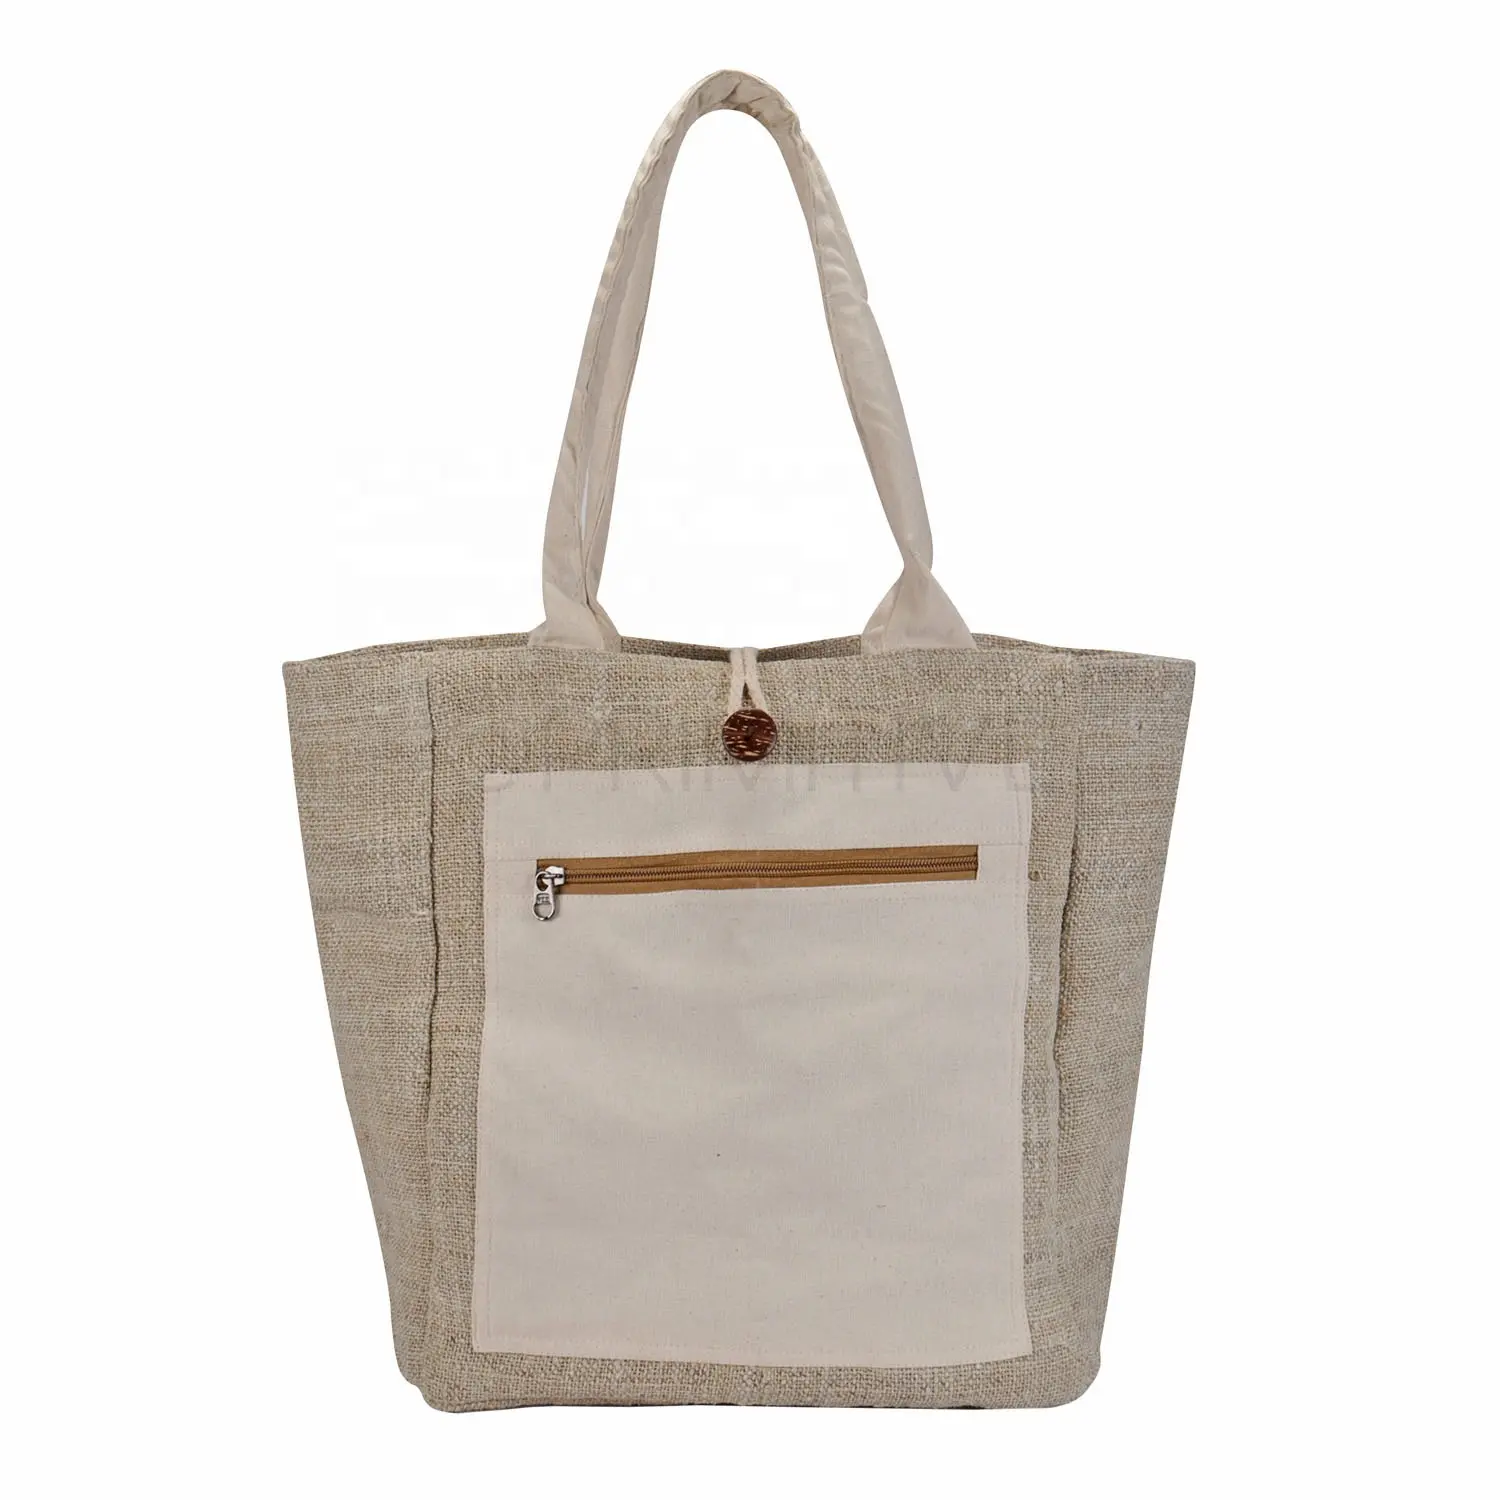 Bolso de lona de cáñamo puro, bolso de mano Vintage abierto, bolso de cáñamo personalizado, algodón resistente de cáñamo ecológico para mujeres manejado